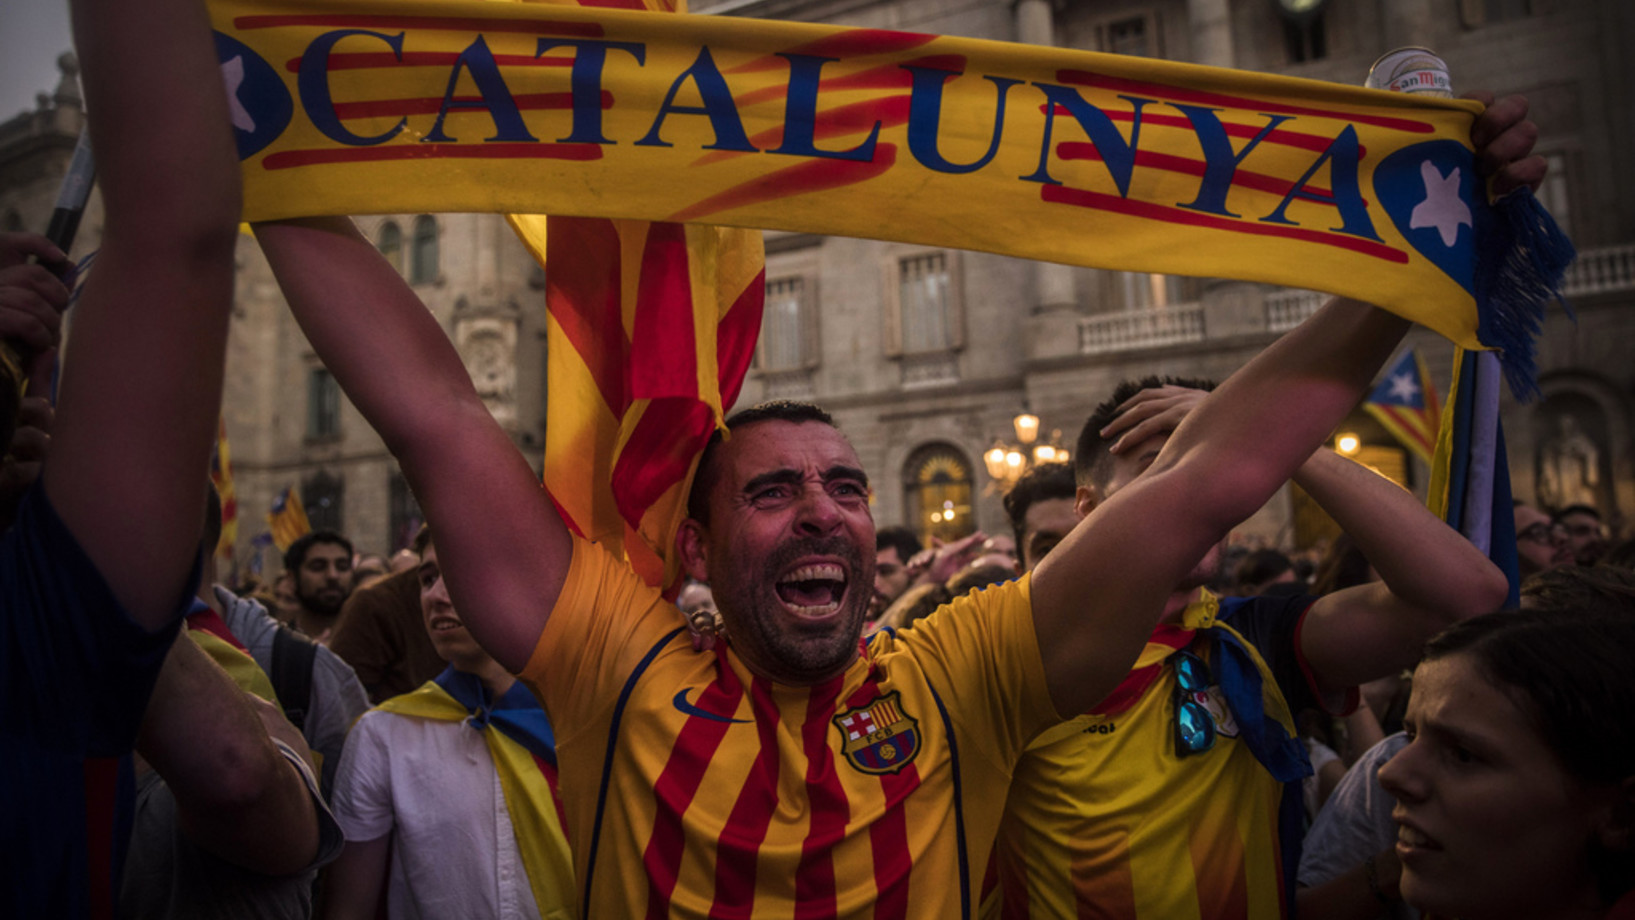 Zehntausende feiern in der Nacht zum Samstag in den Strassen Barcelonas. (Foto: Keystone/AP/Sabit Palacios)

